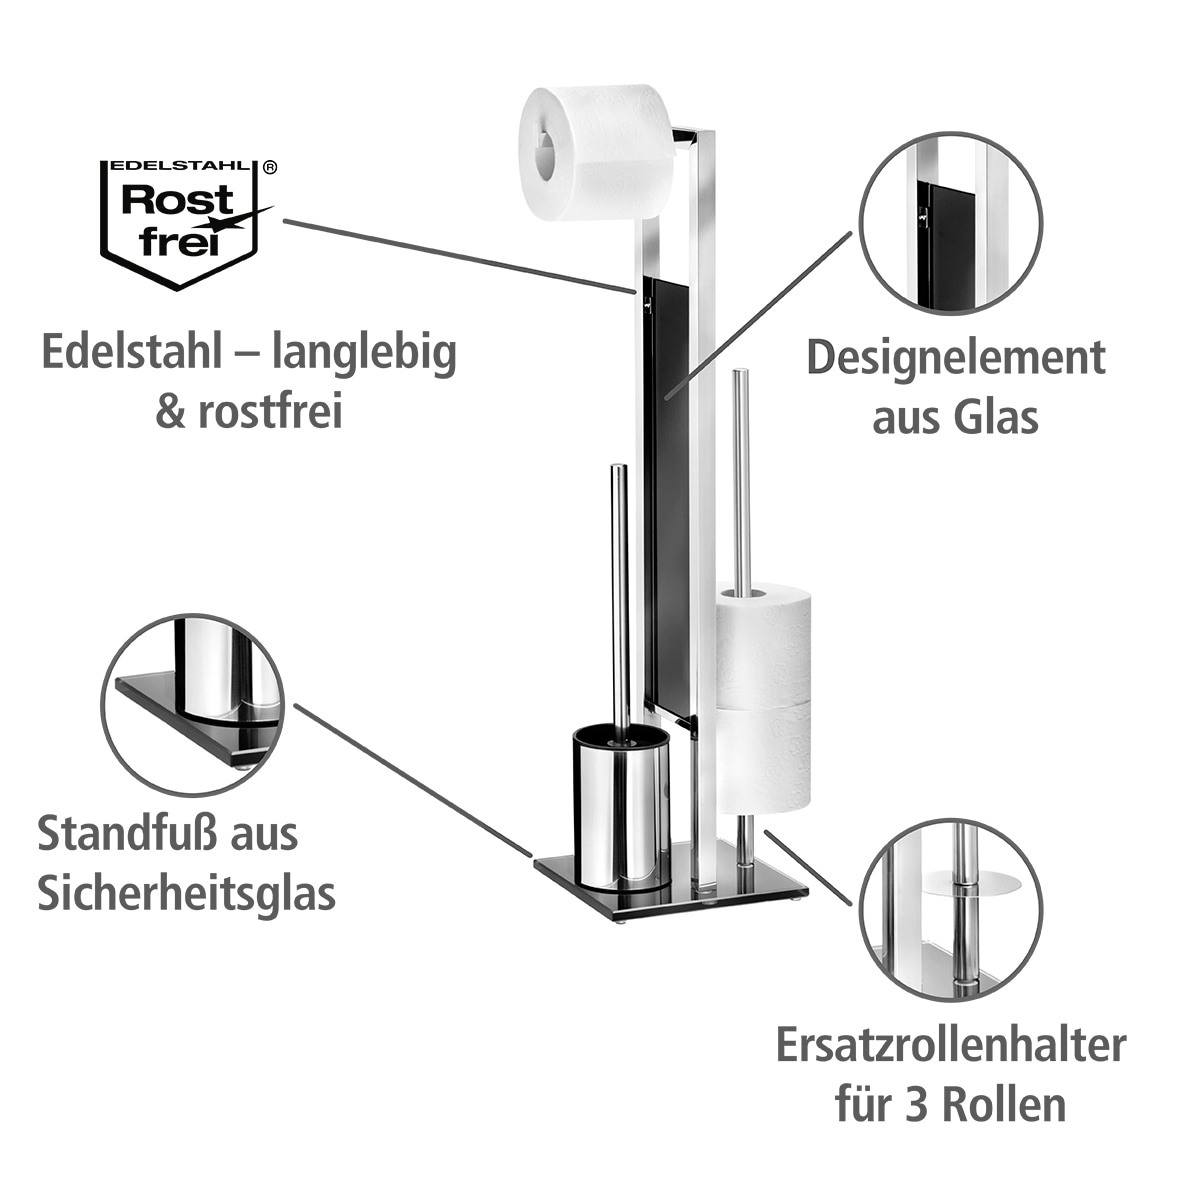 WENKO WC-Garnitur »Rivalta«, aus Edelstahl, integrierter  Toilettenpapierhalter und WC-Bürstenhalter bestellen | BAUR